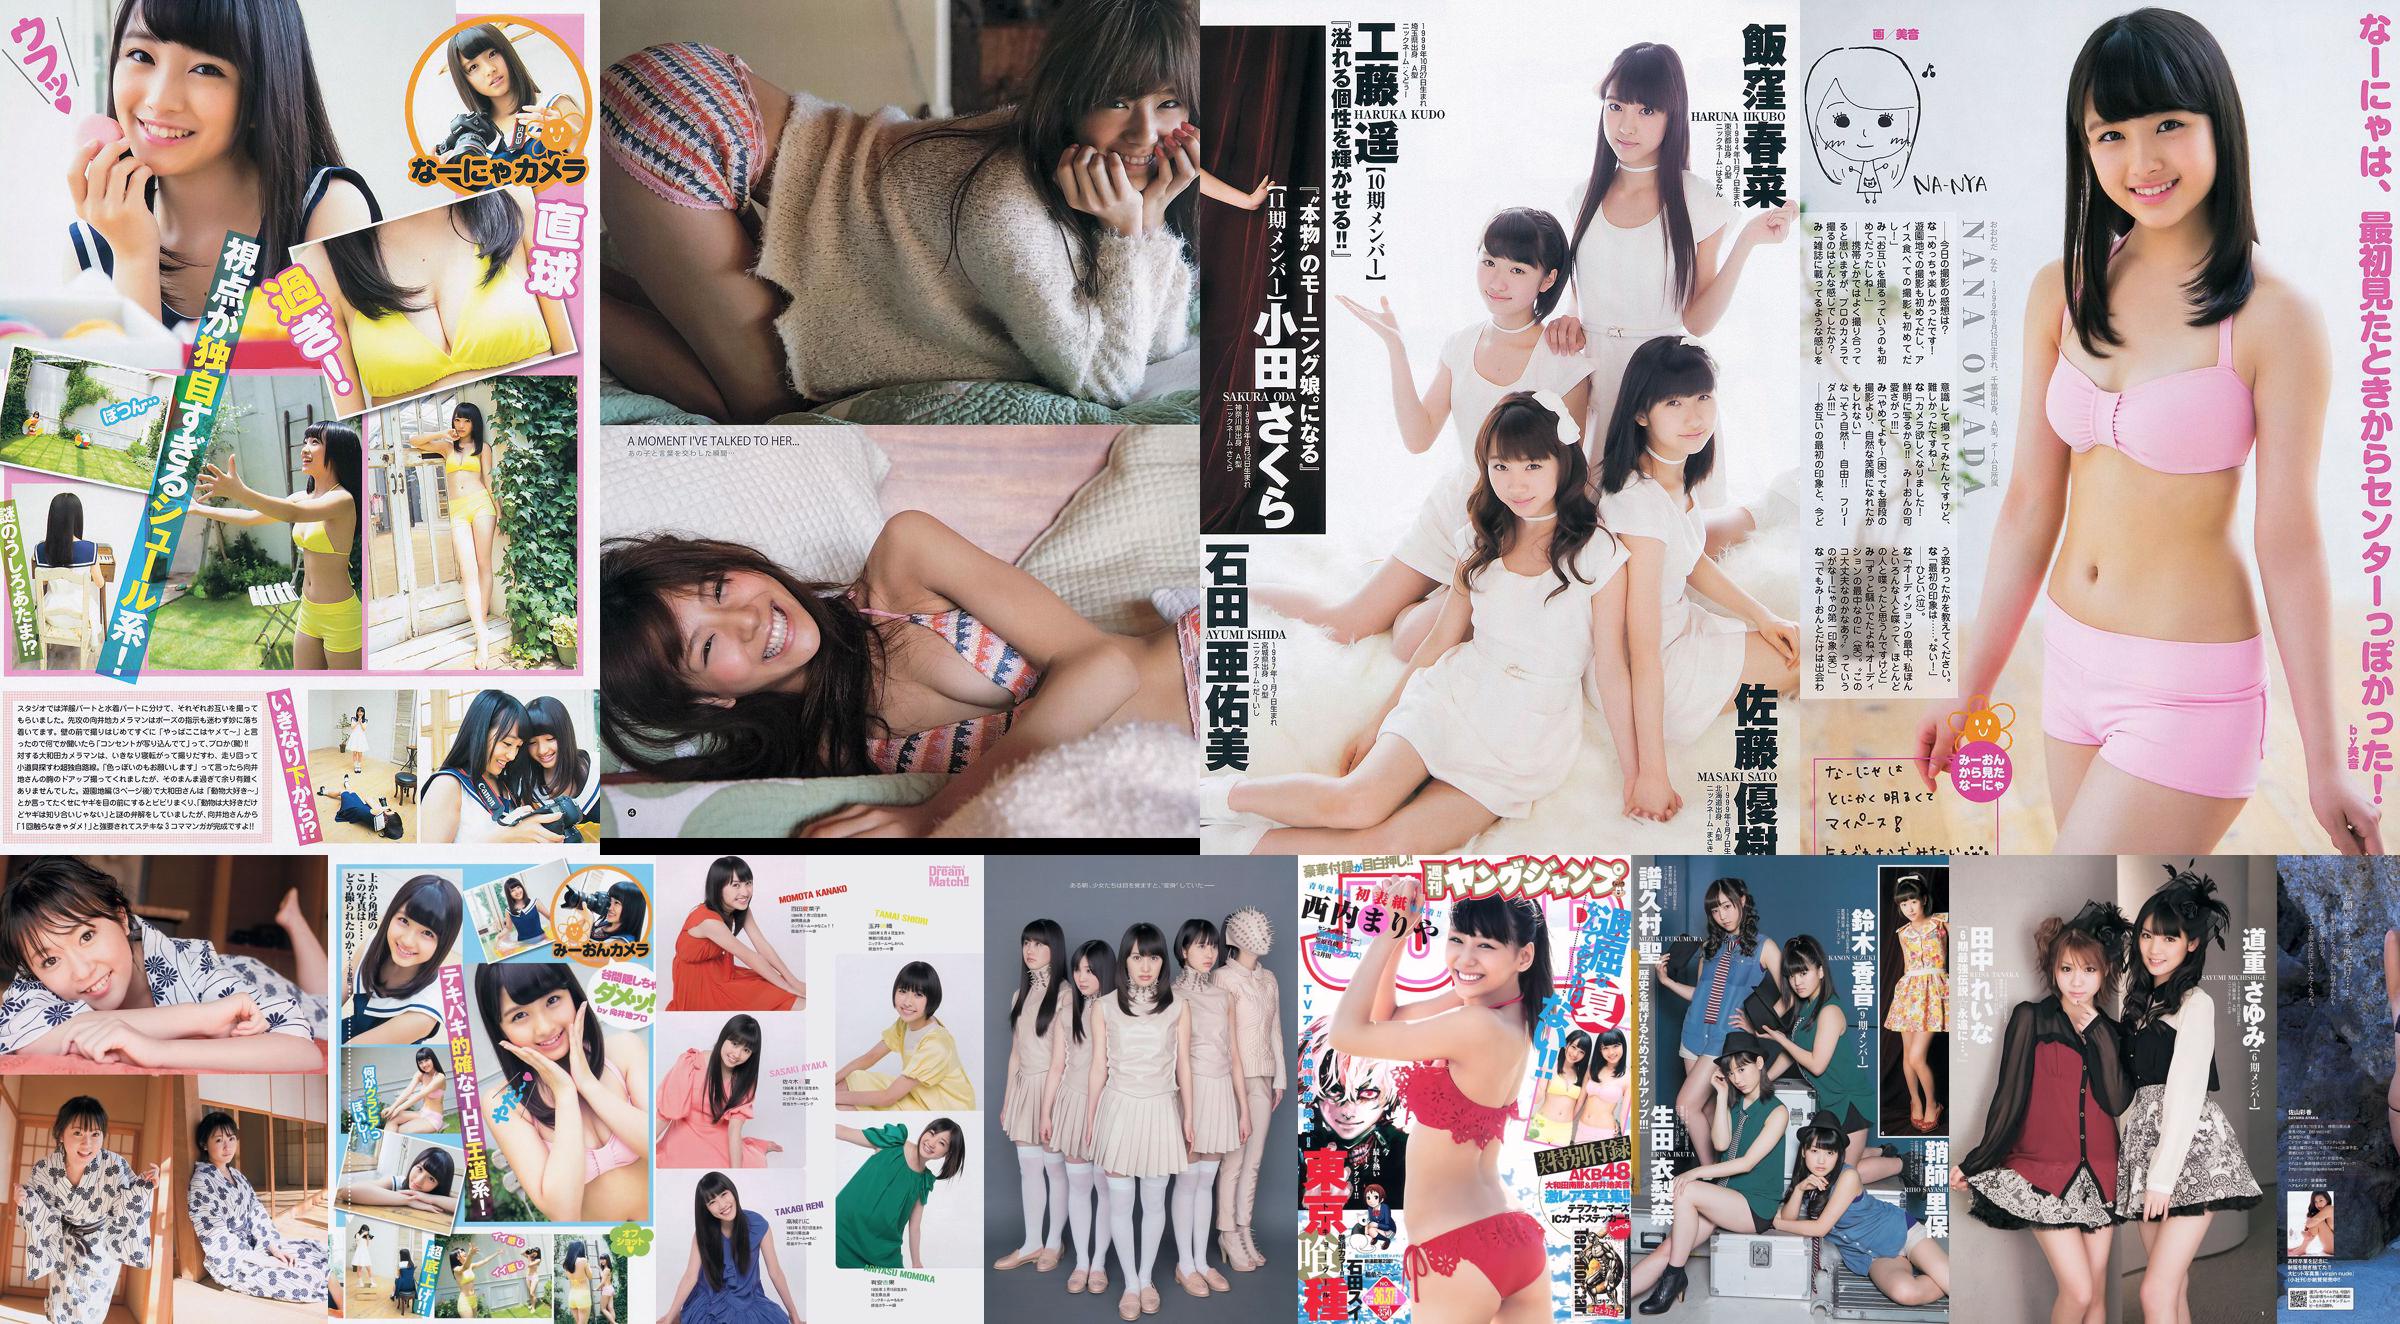 Nishina ま り や Shirakawa Yuna, Owada Nanna, Mugidi Miyin [Weekly Young Jump] Tạp chí ảnh số 36-37 năm 2014 No.70d5a9 Trang 1